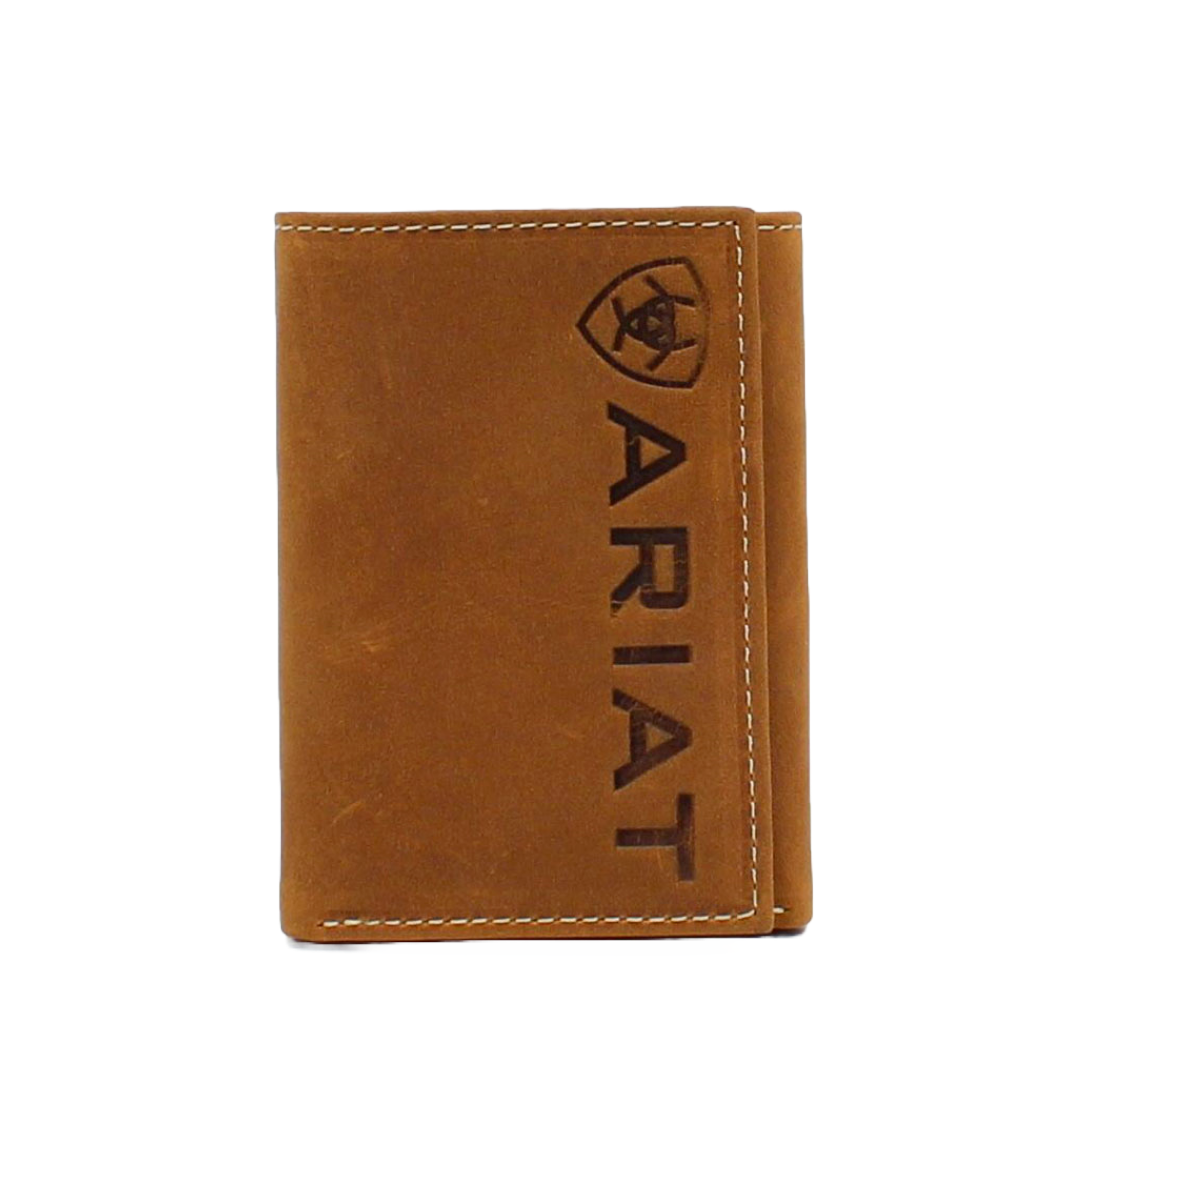 Ariat Men's Medium Brown Vertical Logo Trifold Wallet A3545344